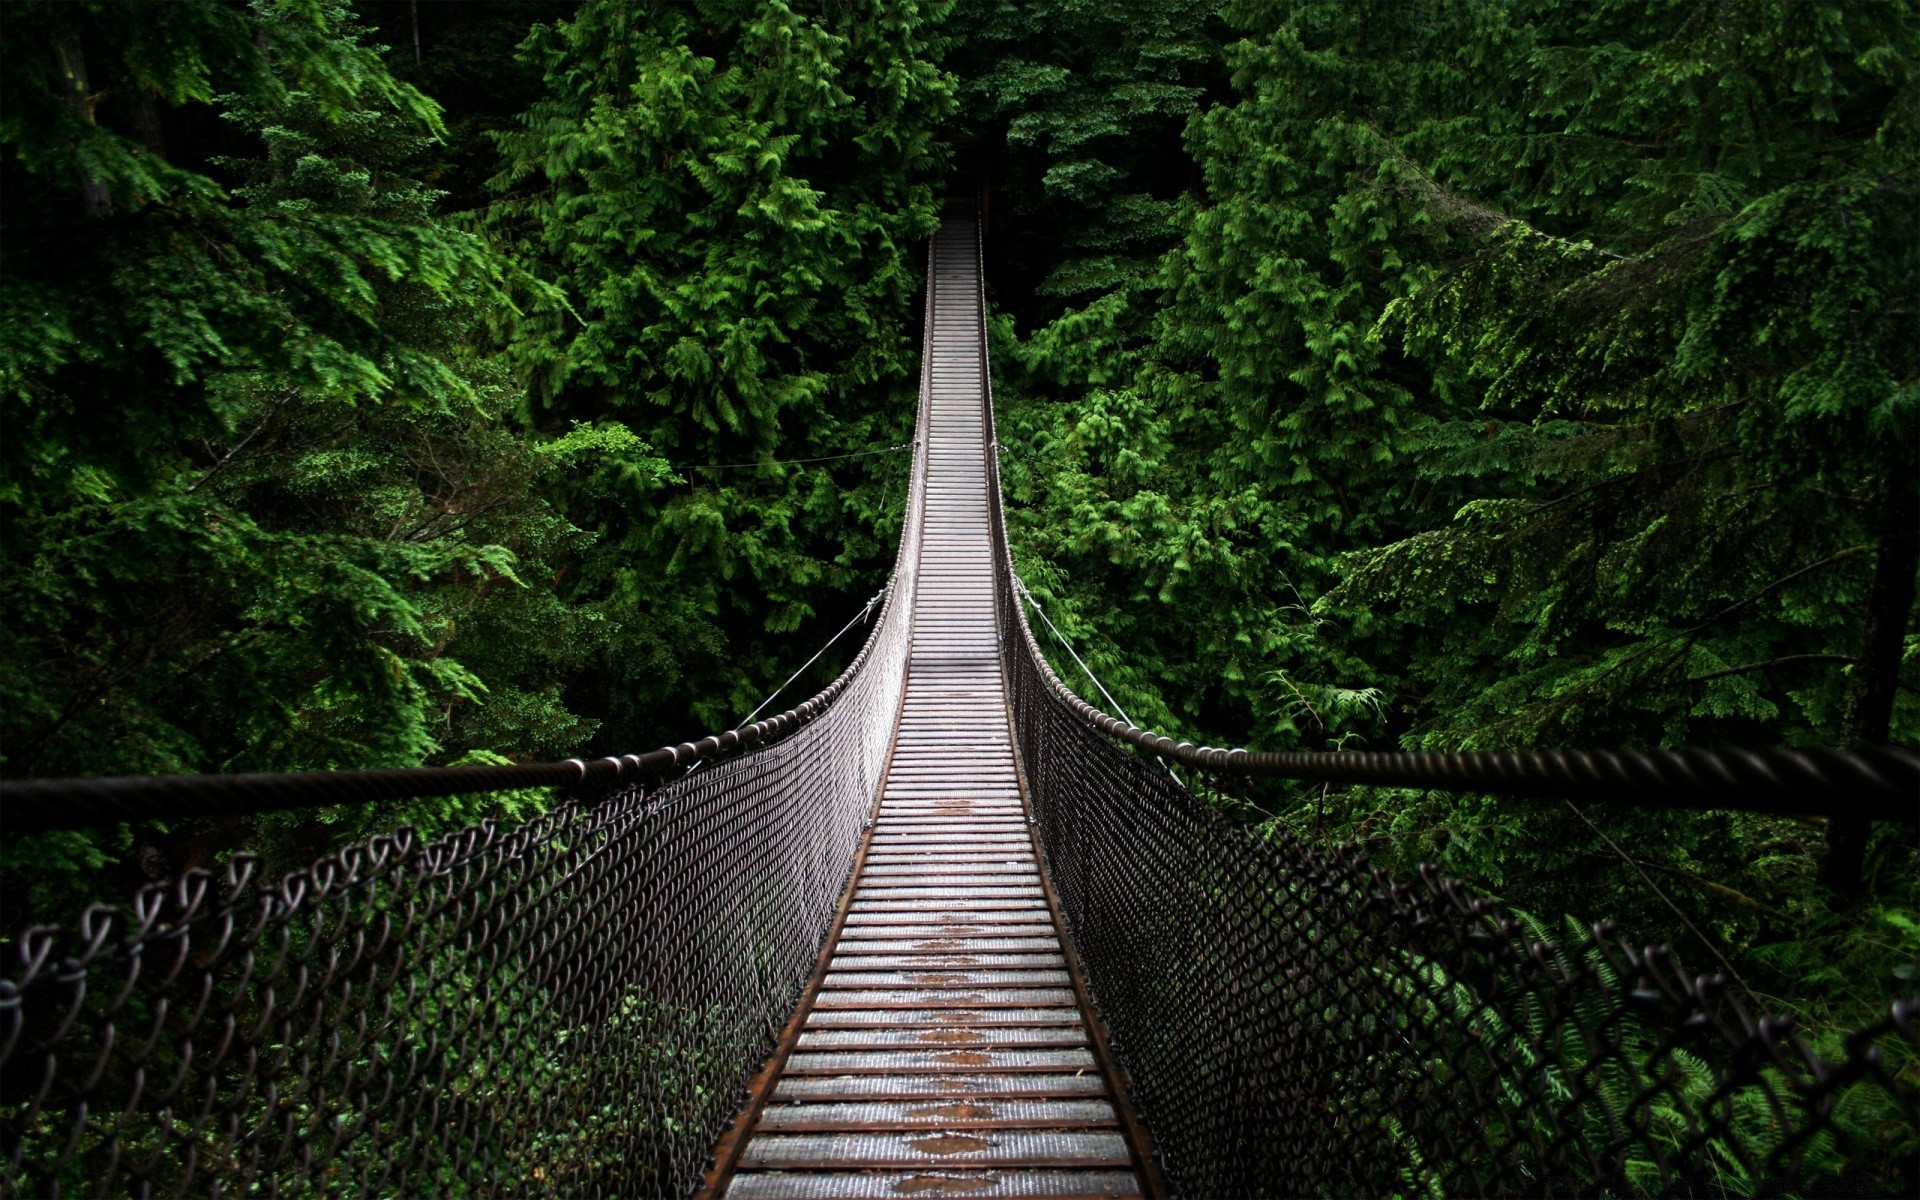 лес древесины дерево мост руководство природа пейзаж путешествия парк след прогулка лист дорога на открытом воздухе живописный мостки